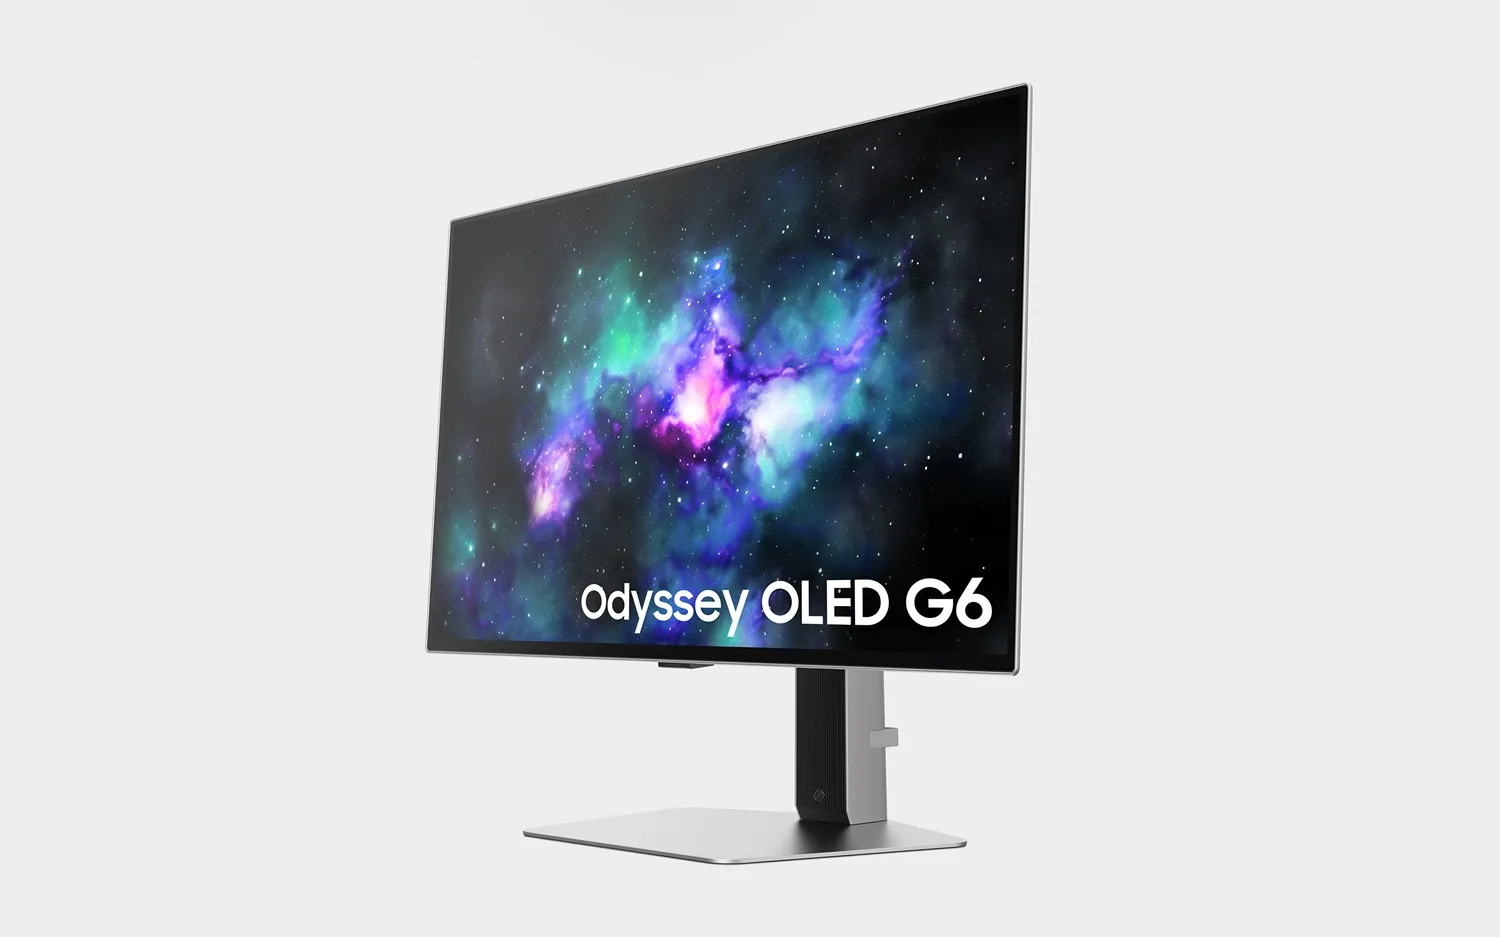 三星的Odyssey OLED G6游戏显示器